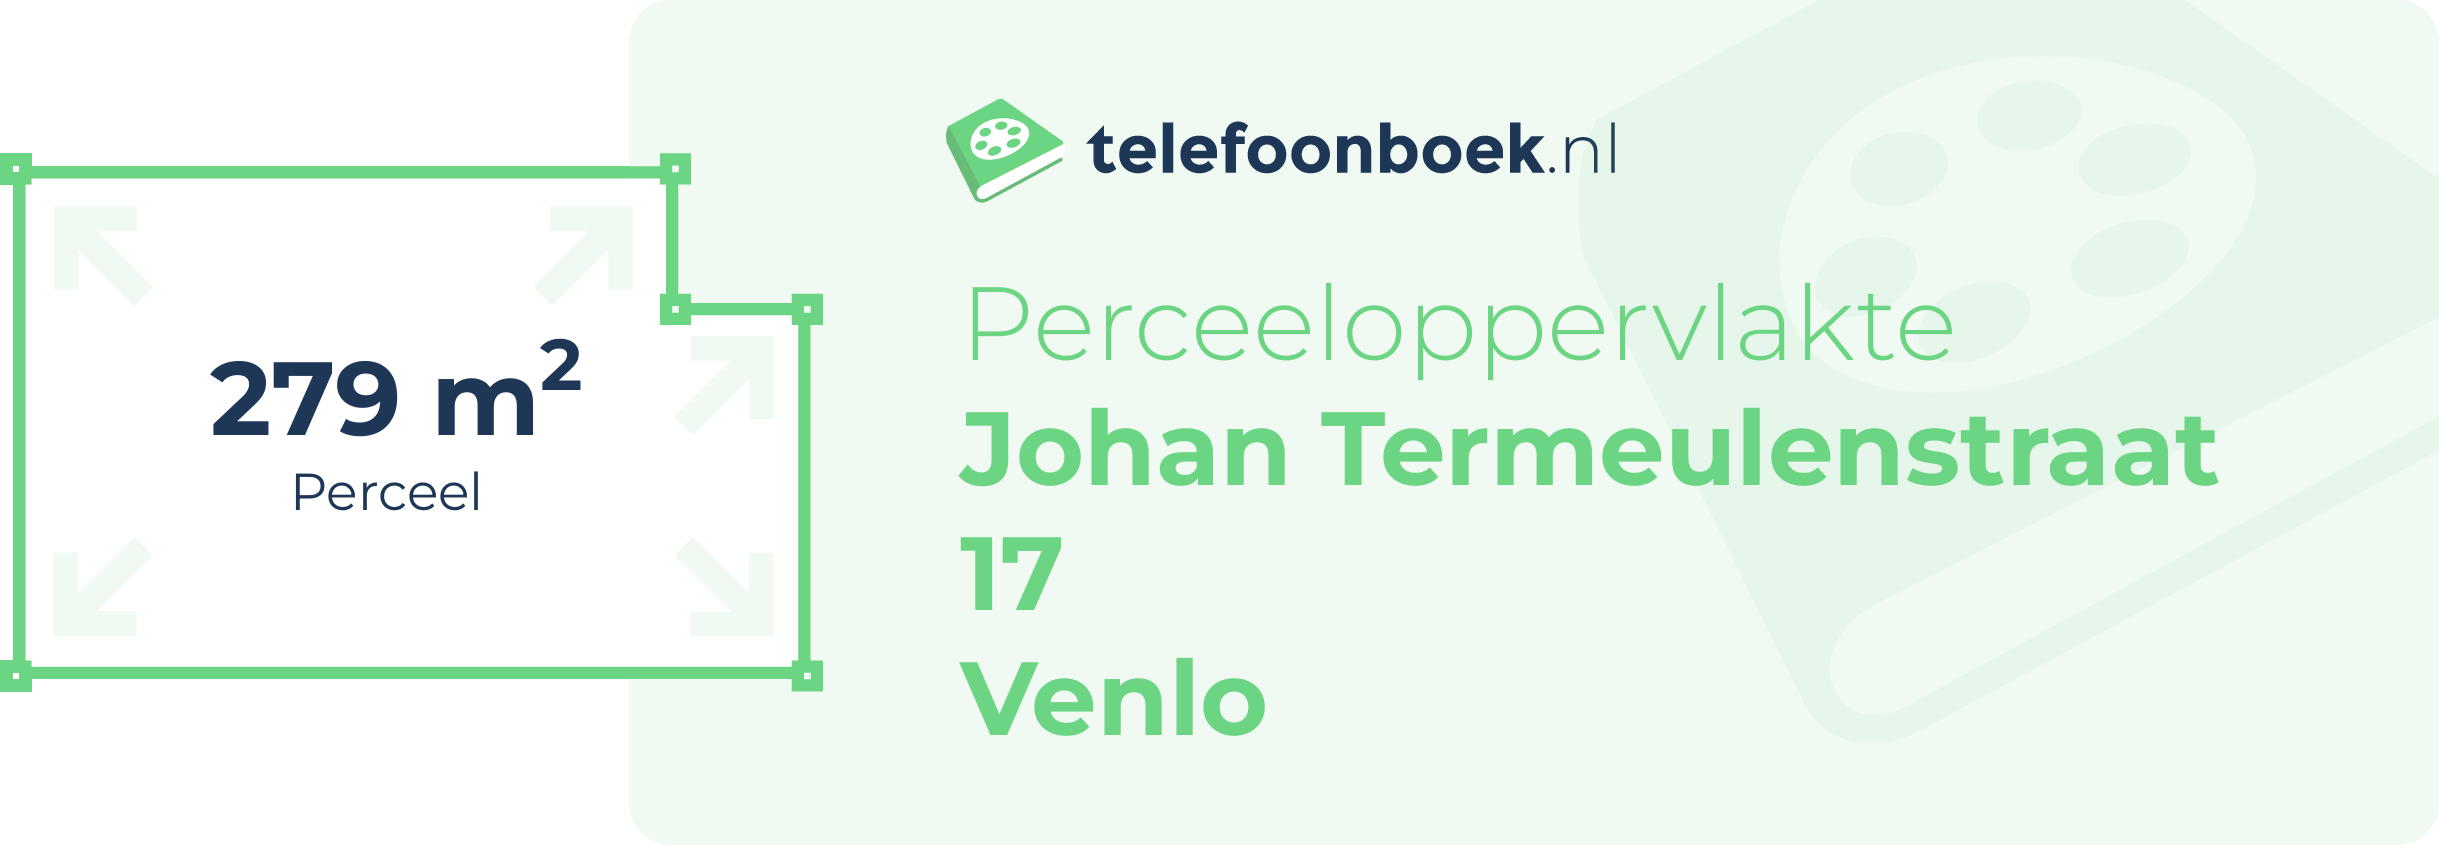 Perceeloppervlakte Johan Termeulenstraat 17 Venlo